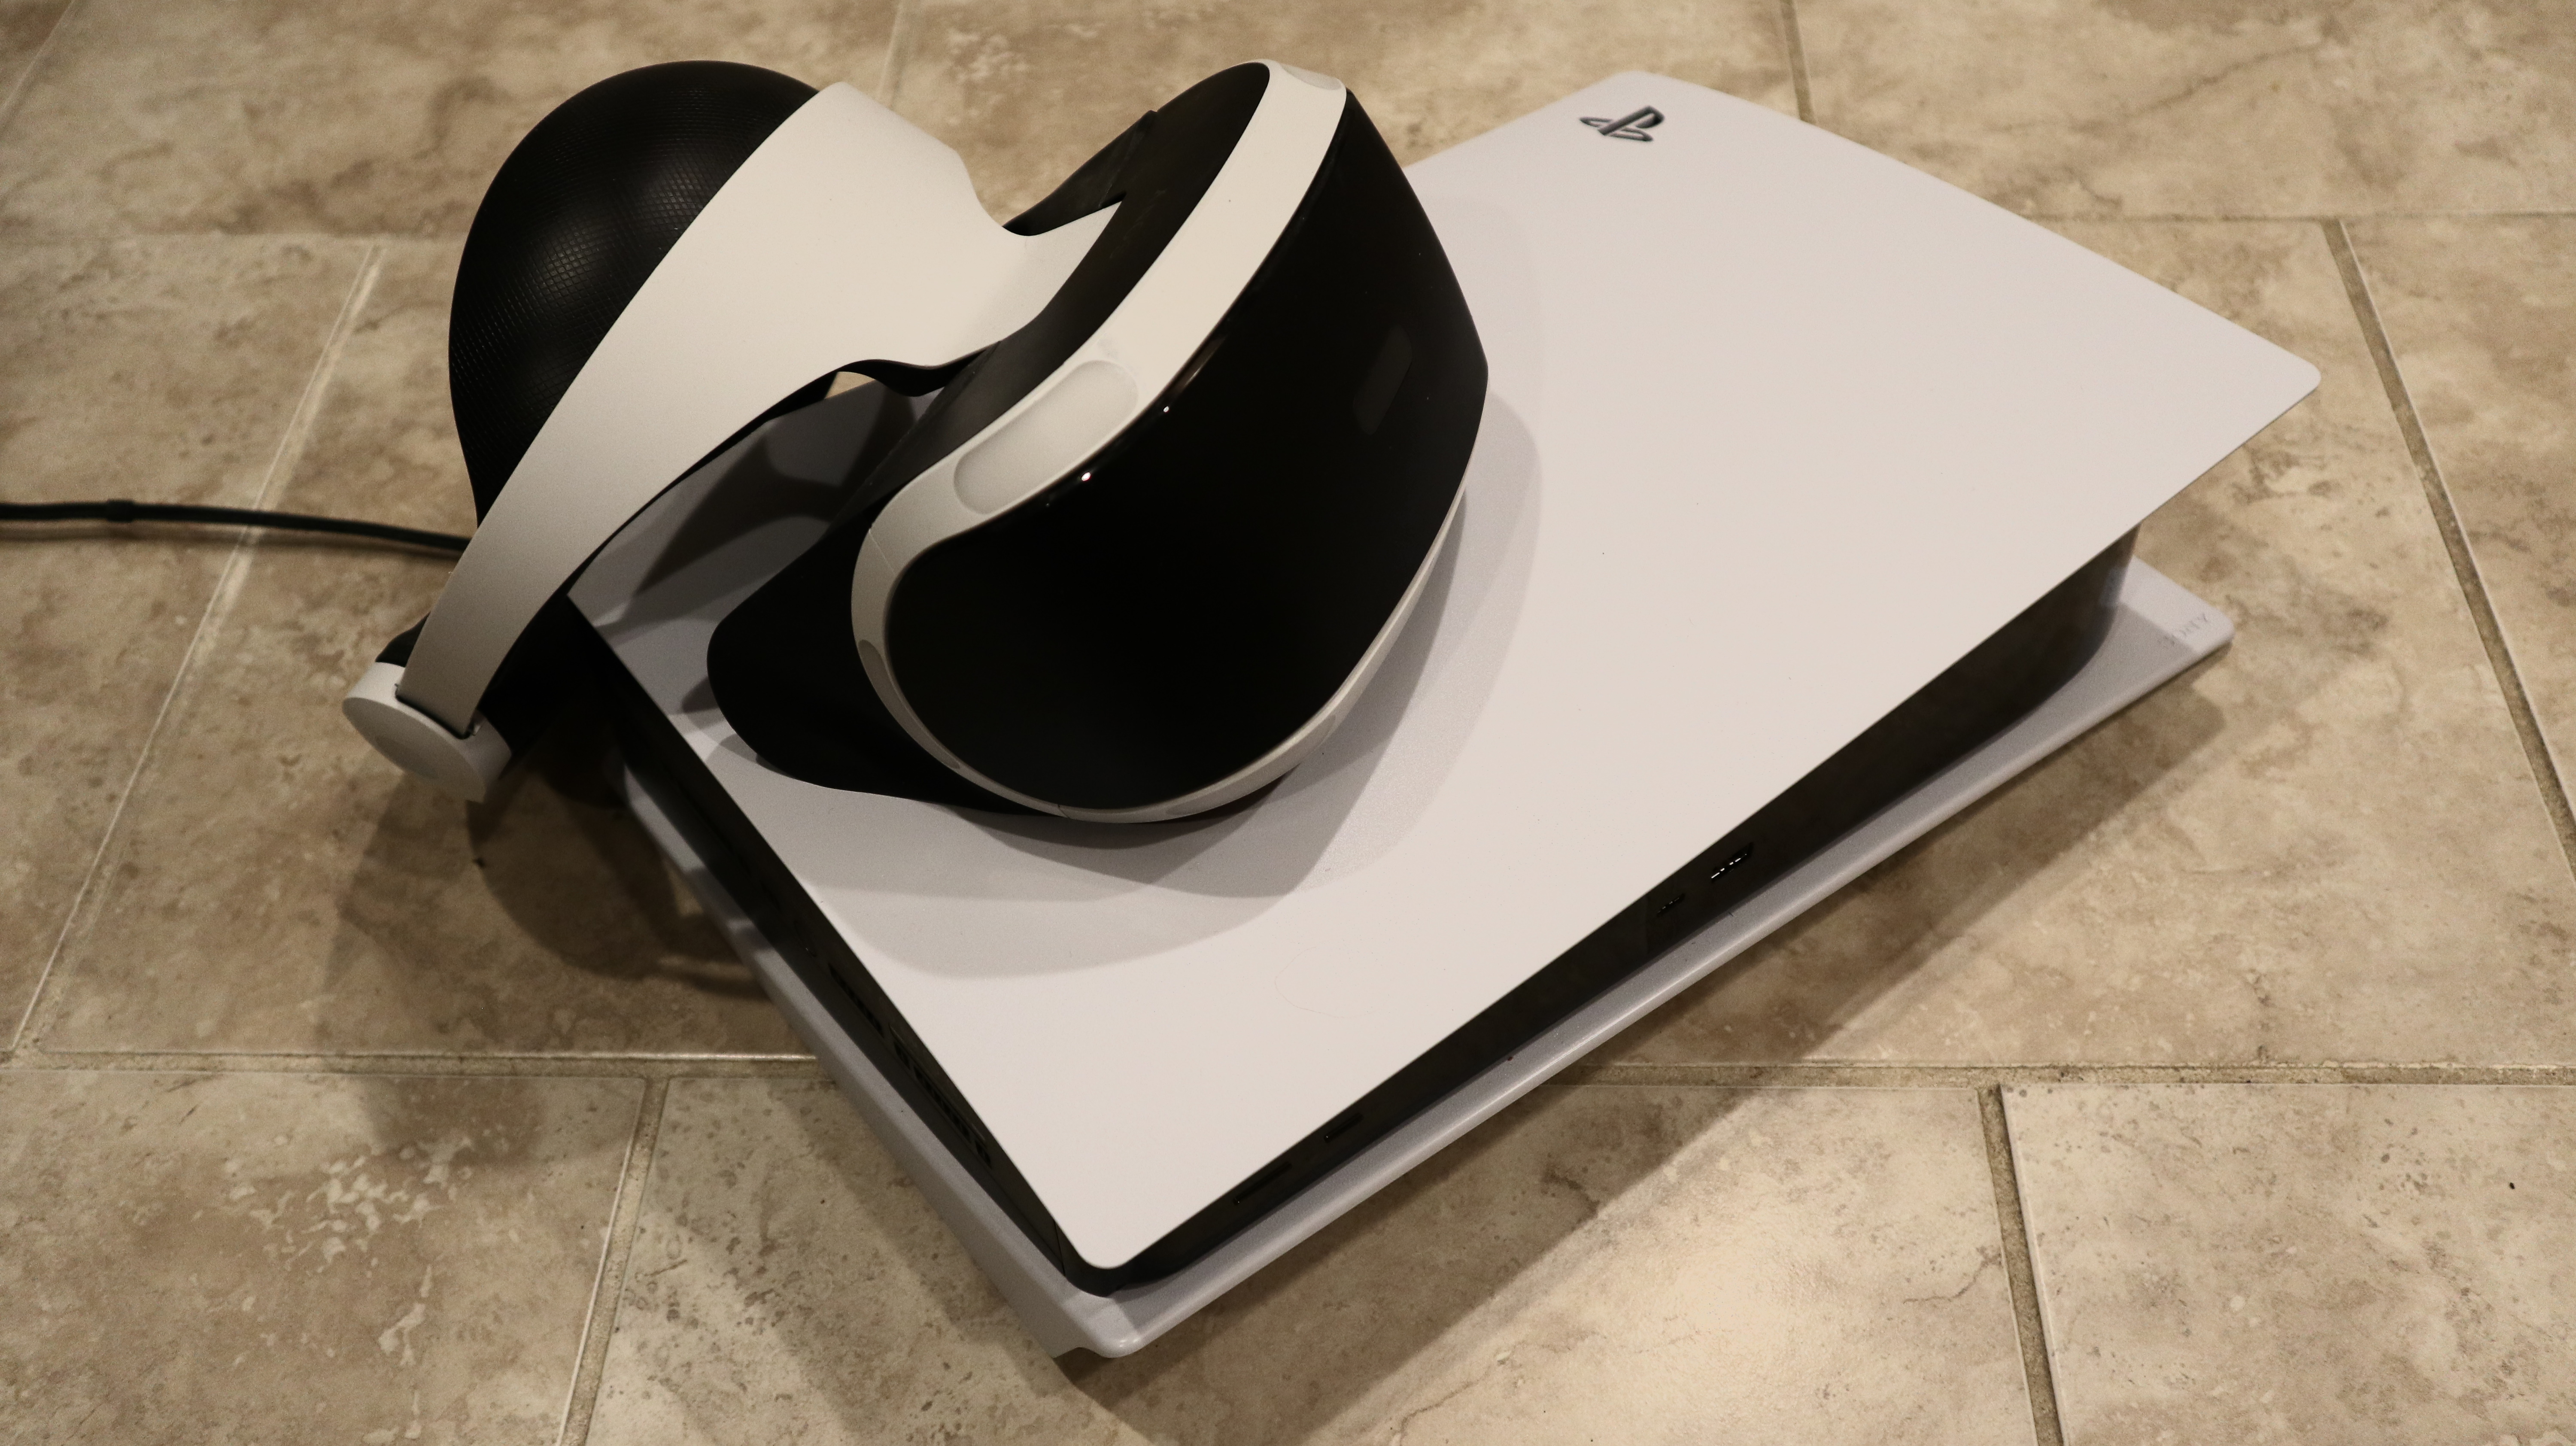 Bonus verkoper Interpersoonlijk Lifting the VR veil: How PlayStation 5 works with Sony's last-gen headset |  Ars Technica